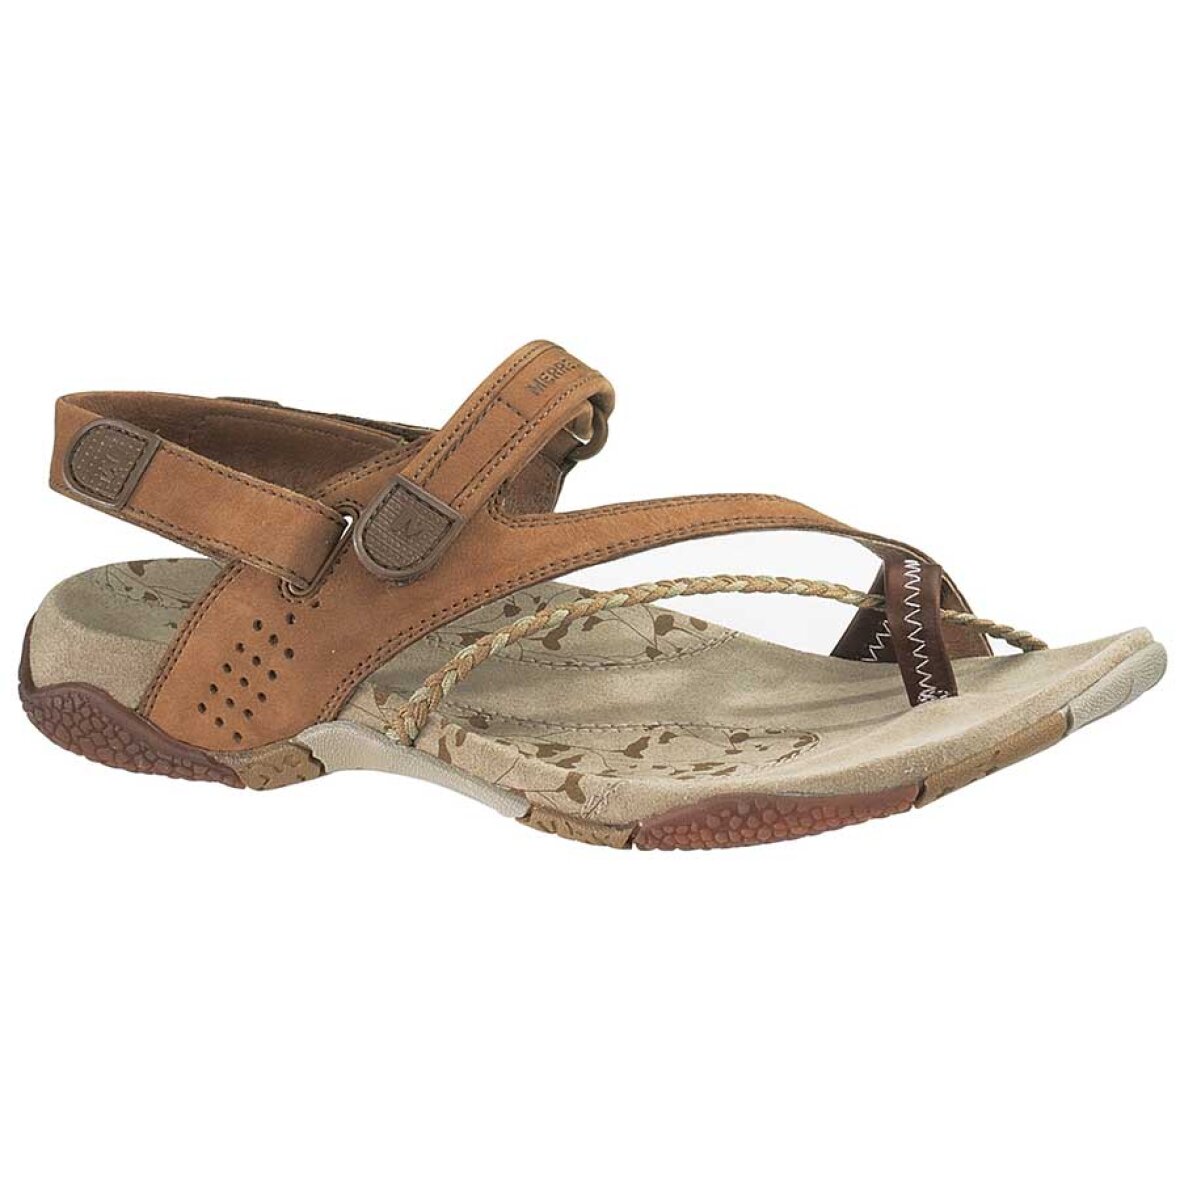 Gurgle tapet konsensus Siena sandal fra Merrell: Køb en fin og praktisk tåsplit-sandal